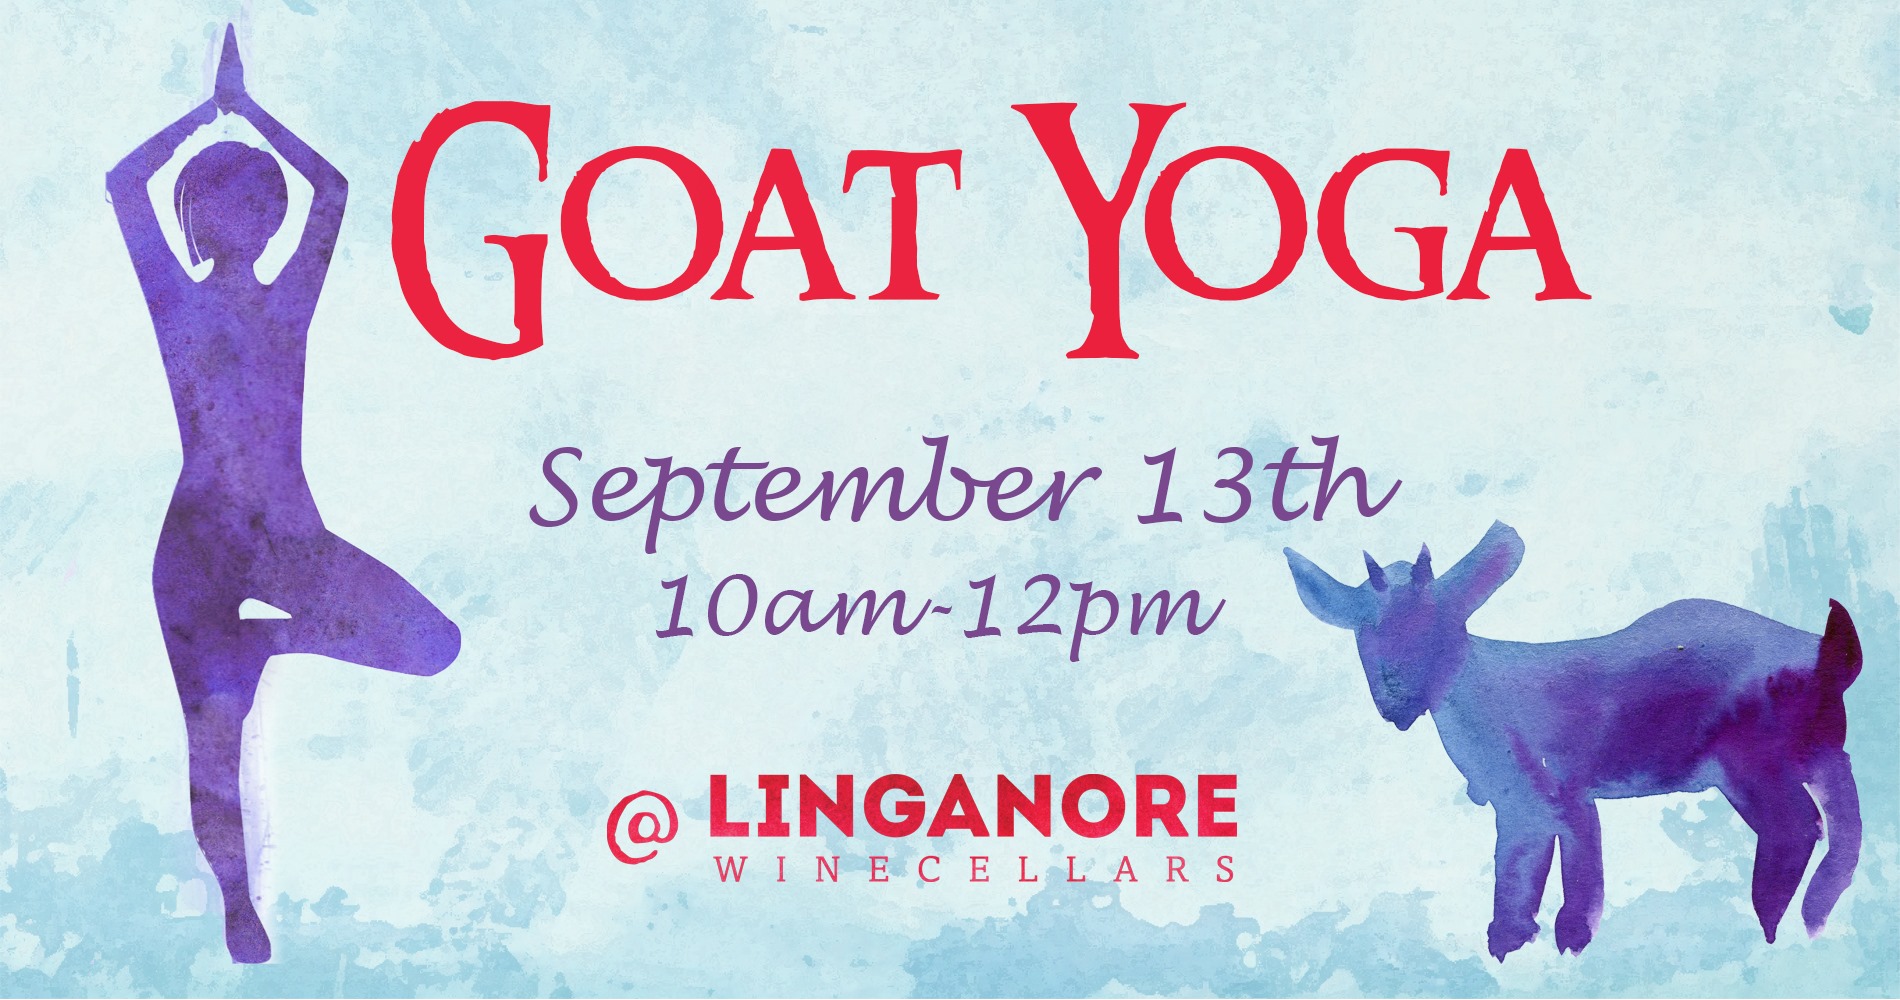 Goat Yoga on September 13th